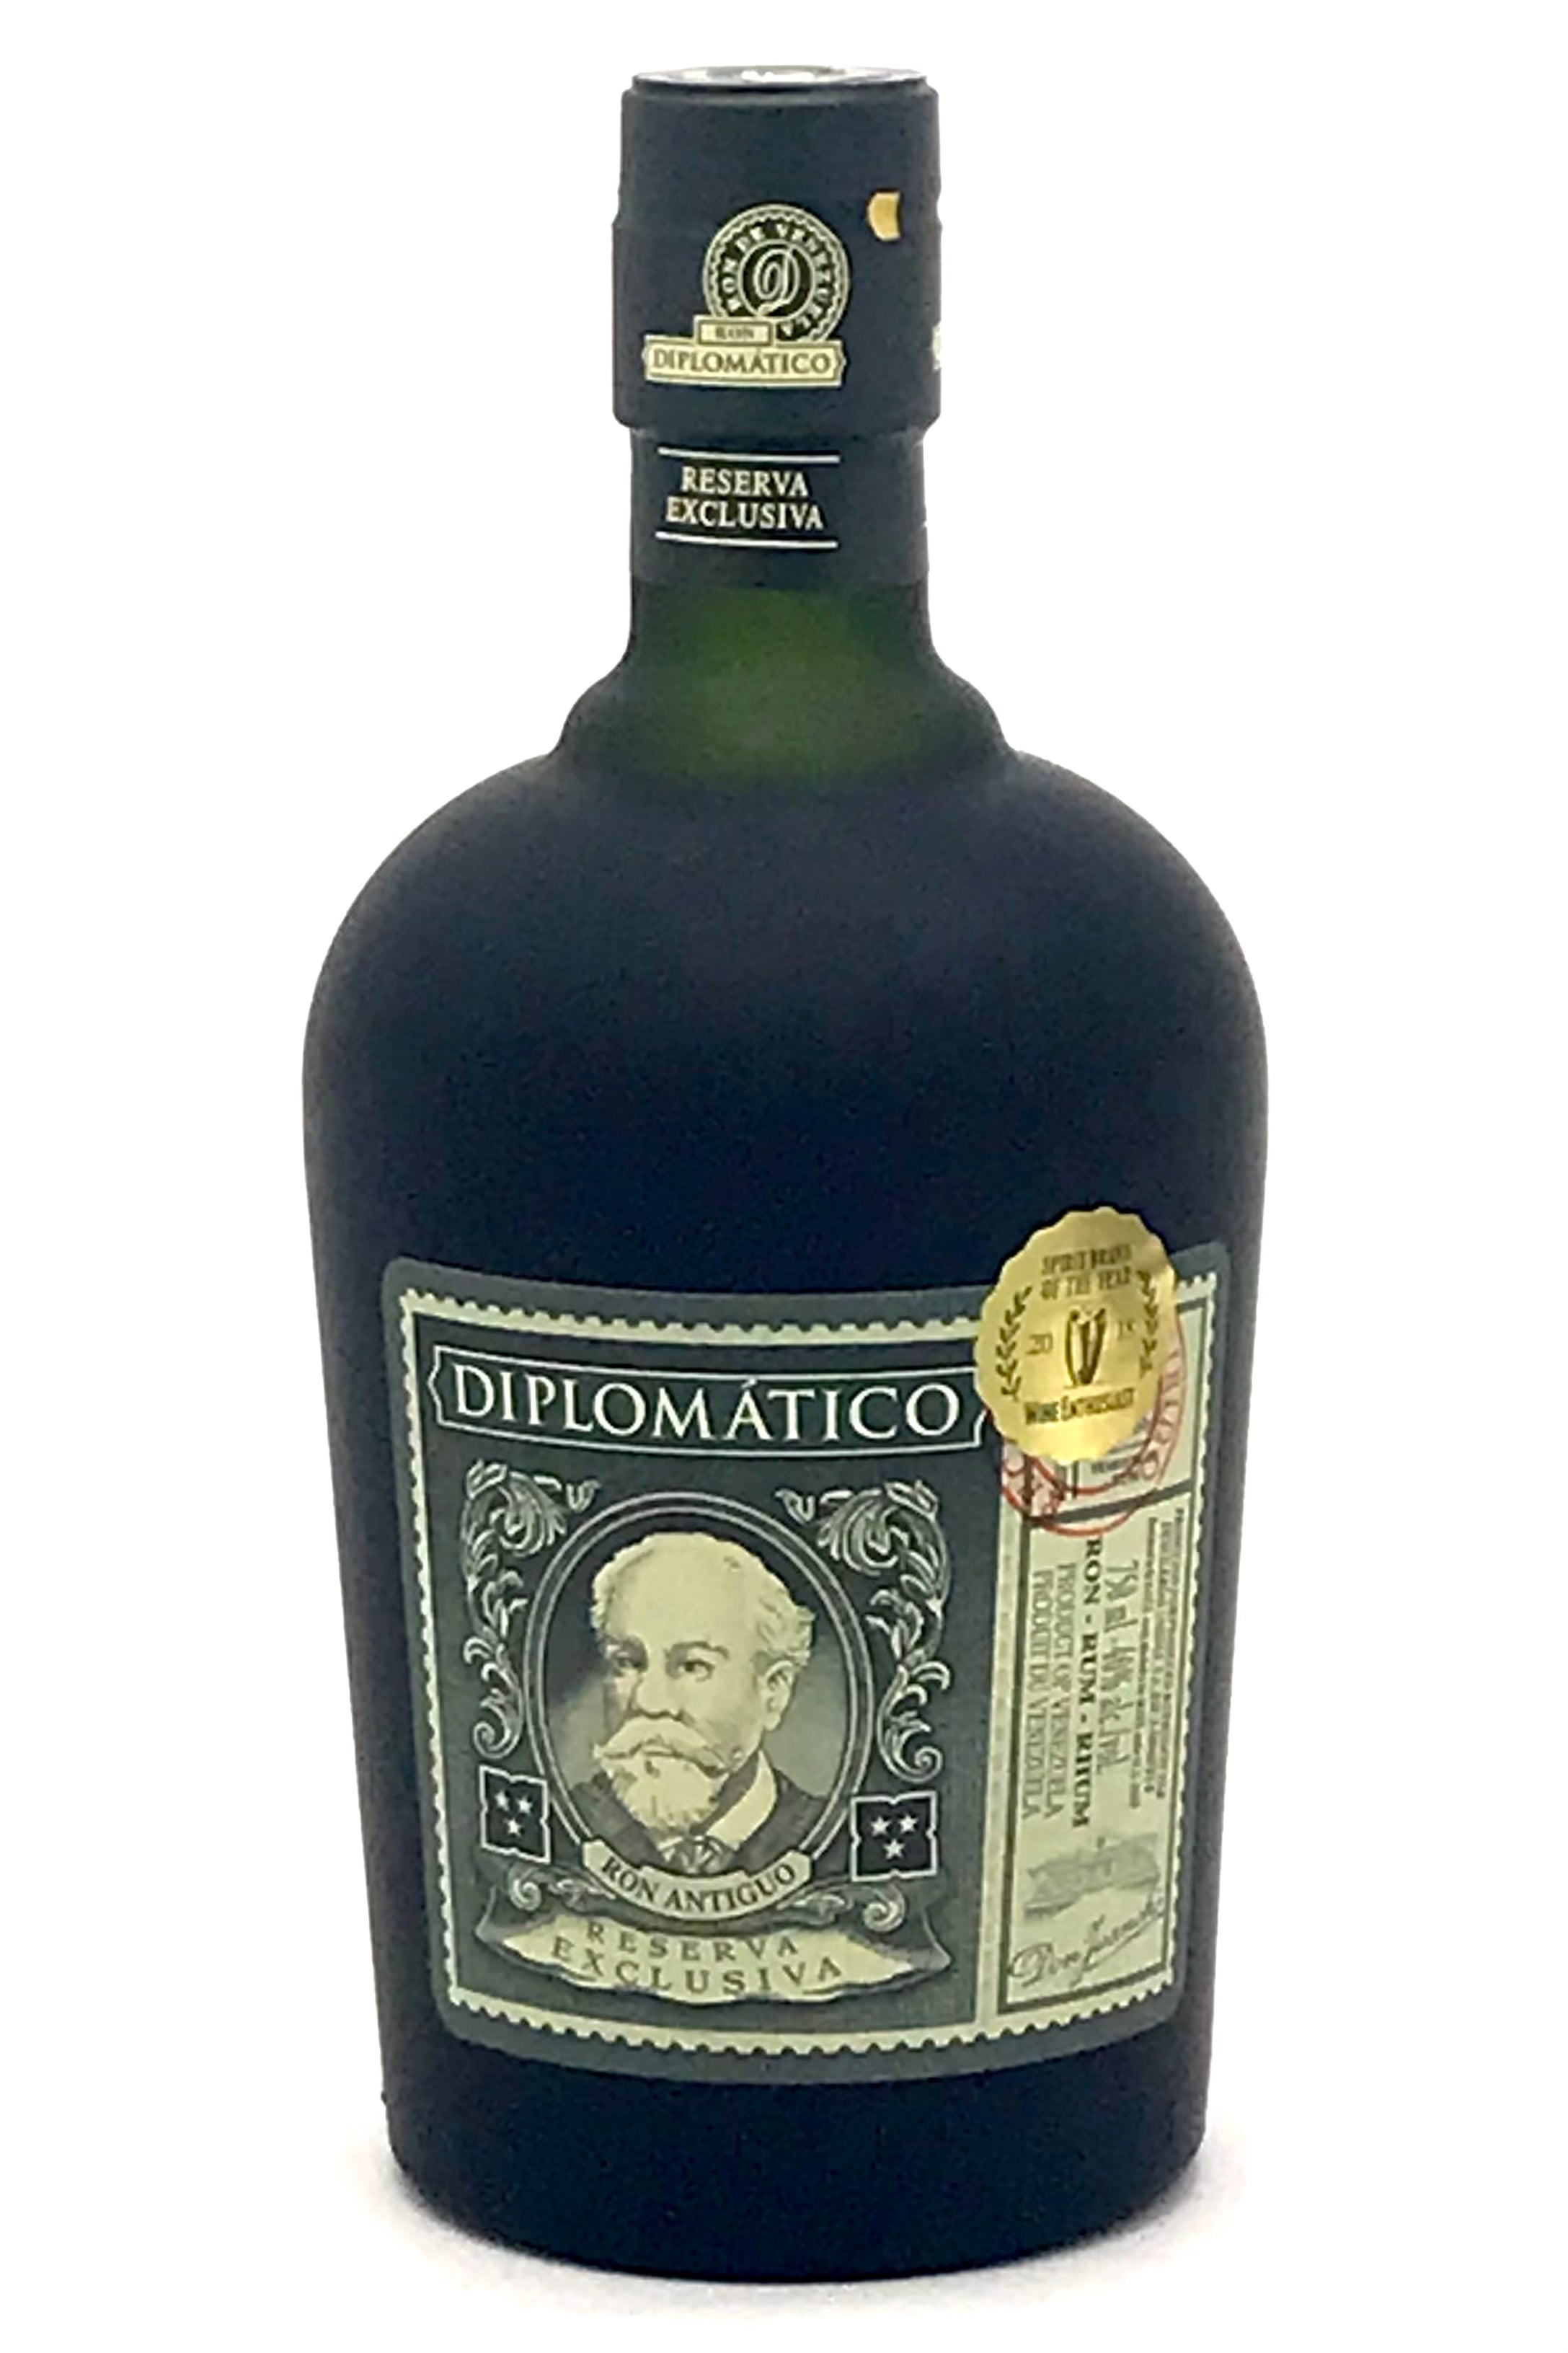 Buy Diplomatico Rum Reserva Exclusiva Online